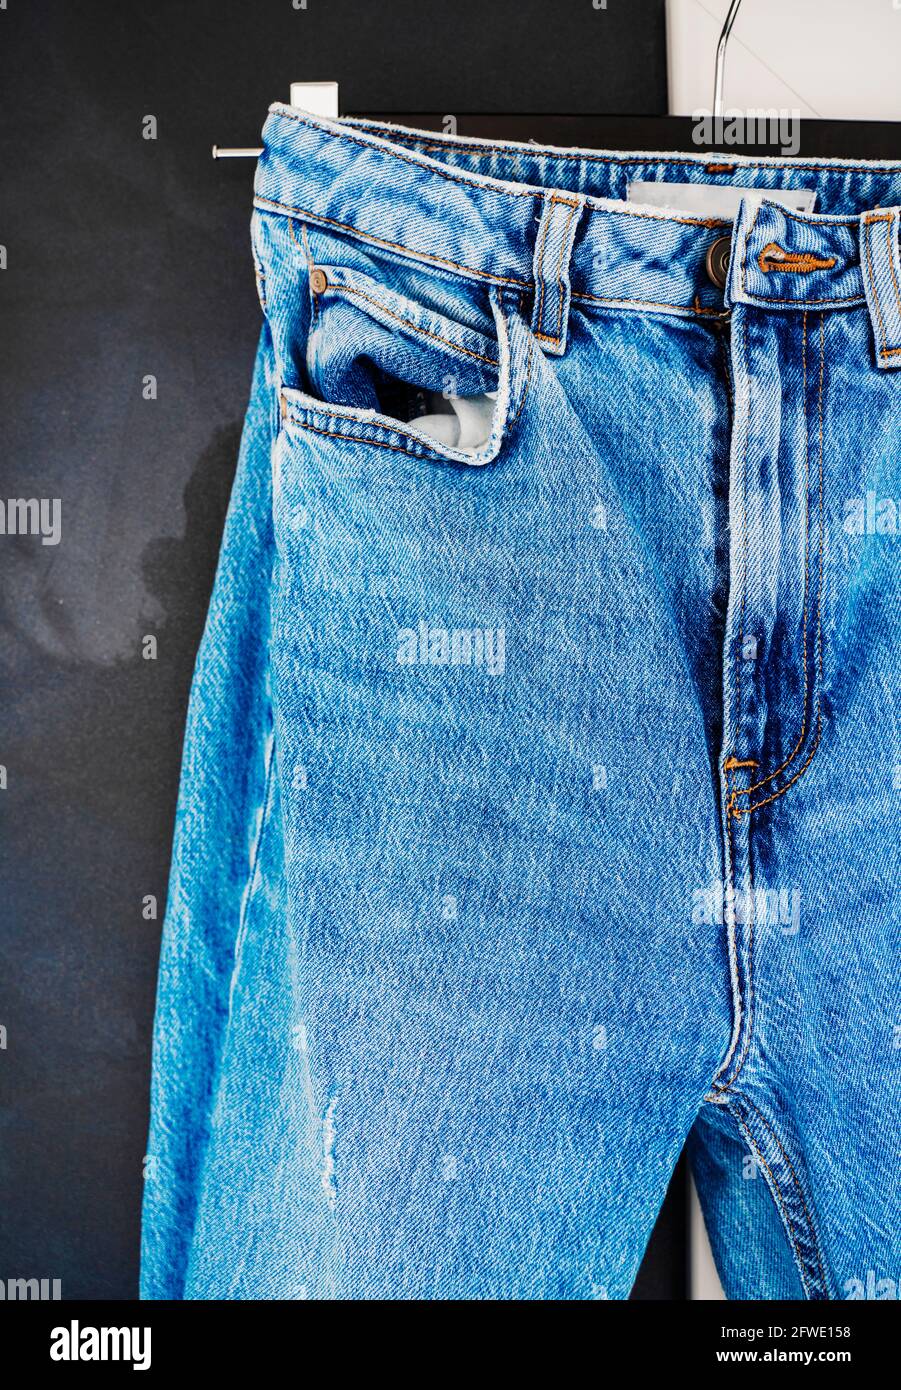 Pantaloni jeans jeans jeans jeans jeans blu da uomo o da donna. Colore saturo di contrasto. Concetto di abbigliamento di moda. Foto Stock